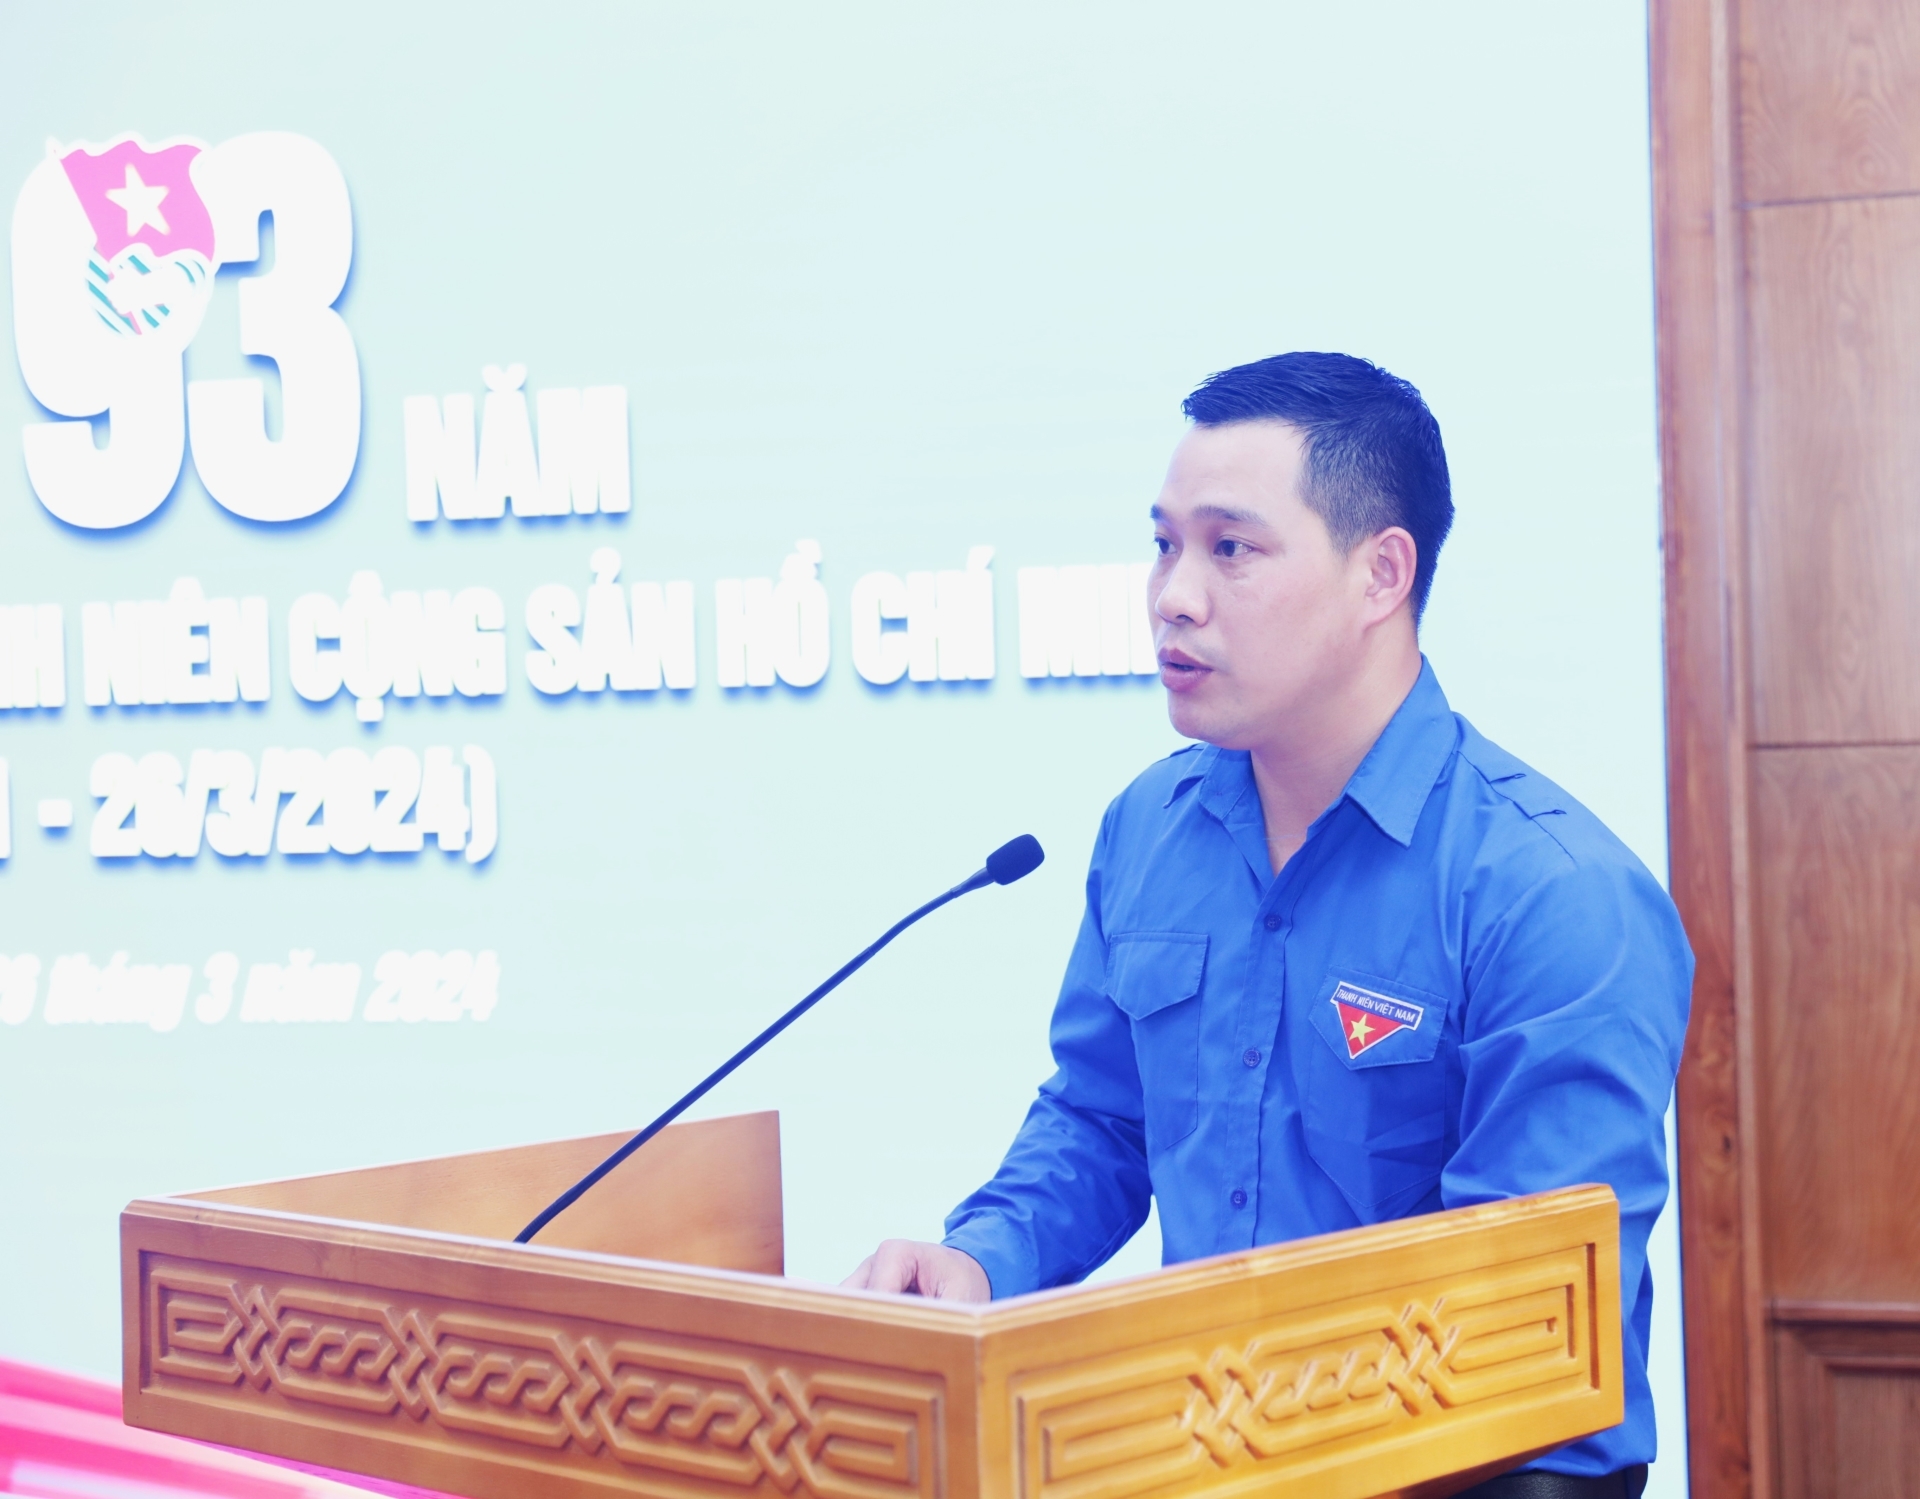 Đồng chí Đào Văn Hiếu, Bí thư Đoàn Thanh niên cơ quan Ban Tuyên giáo Trung ương phát biểu.